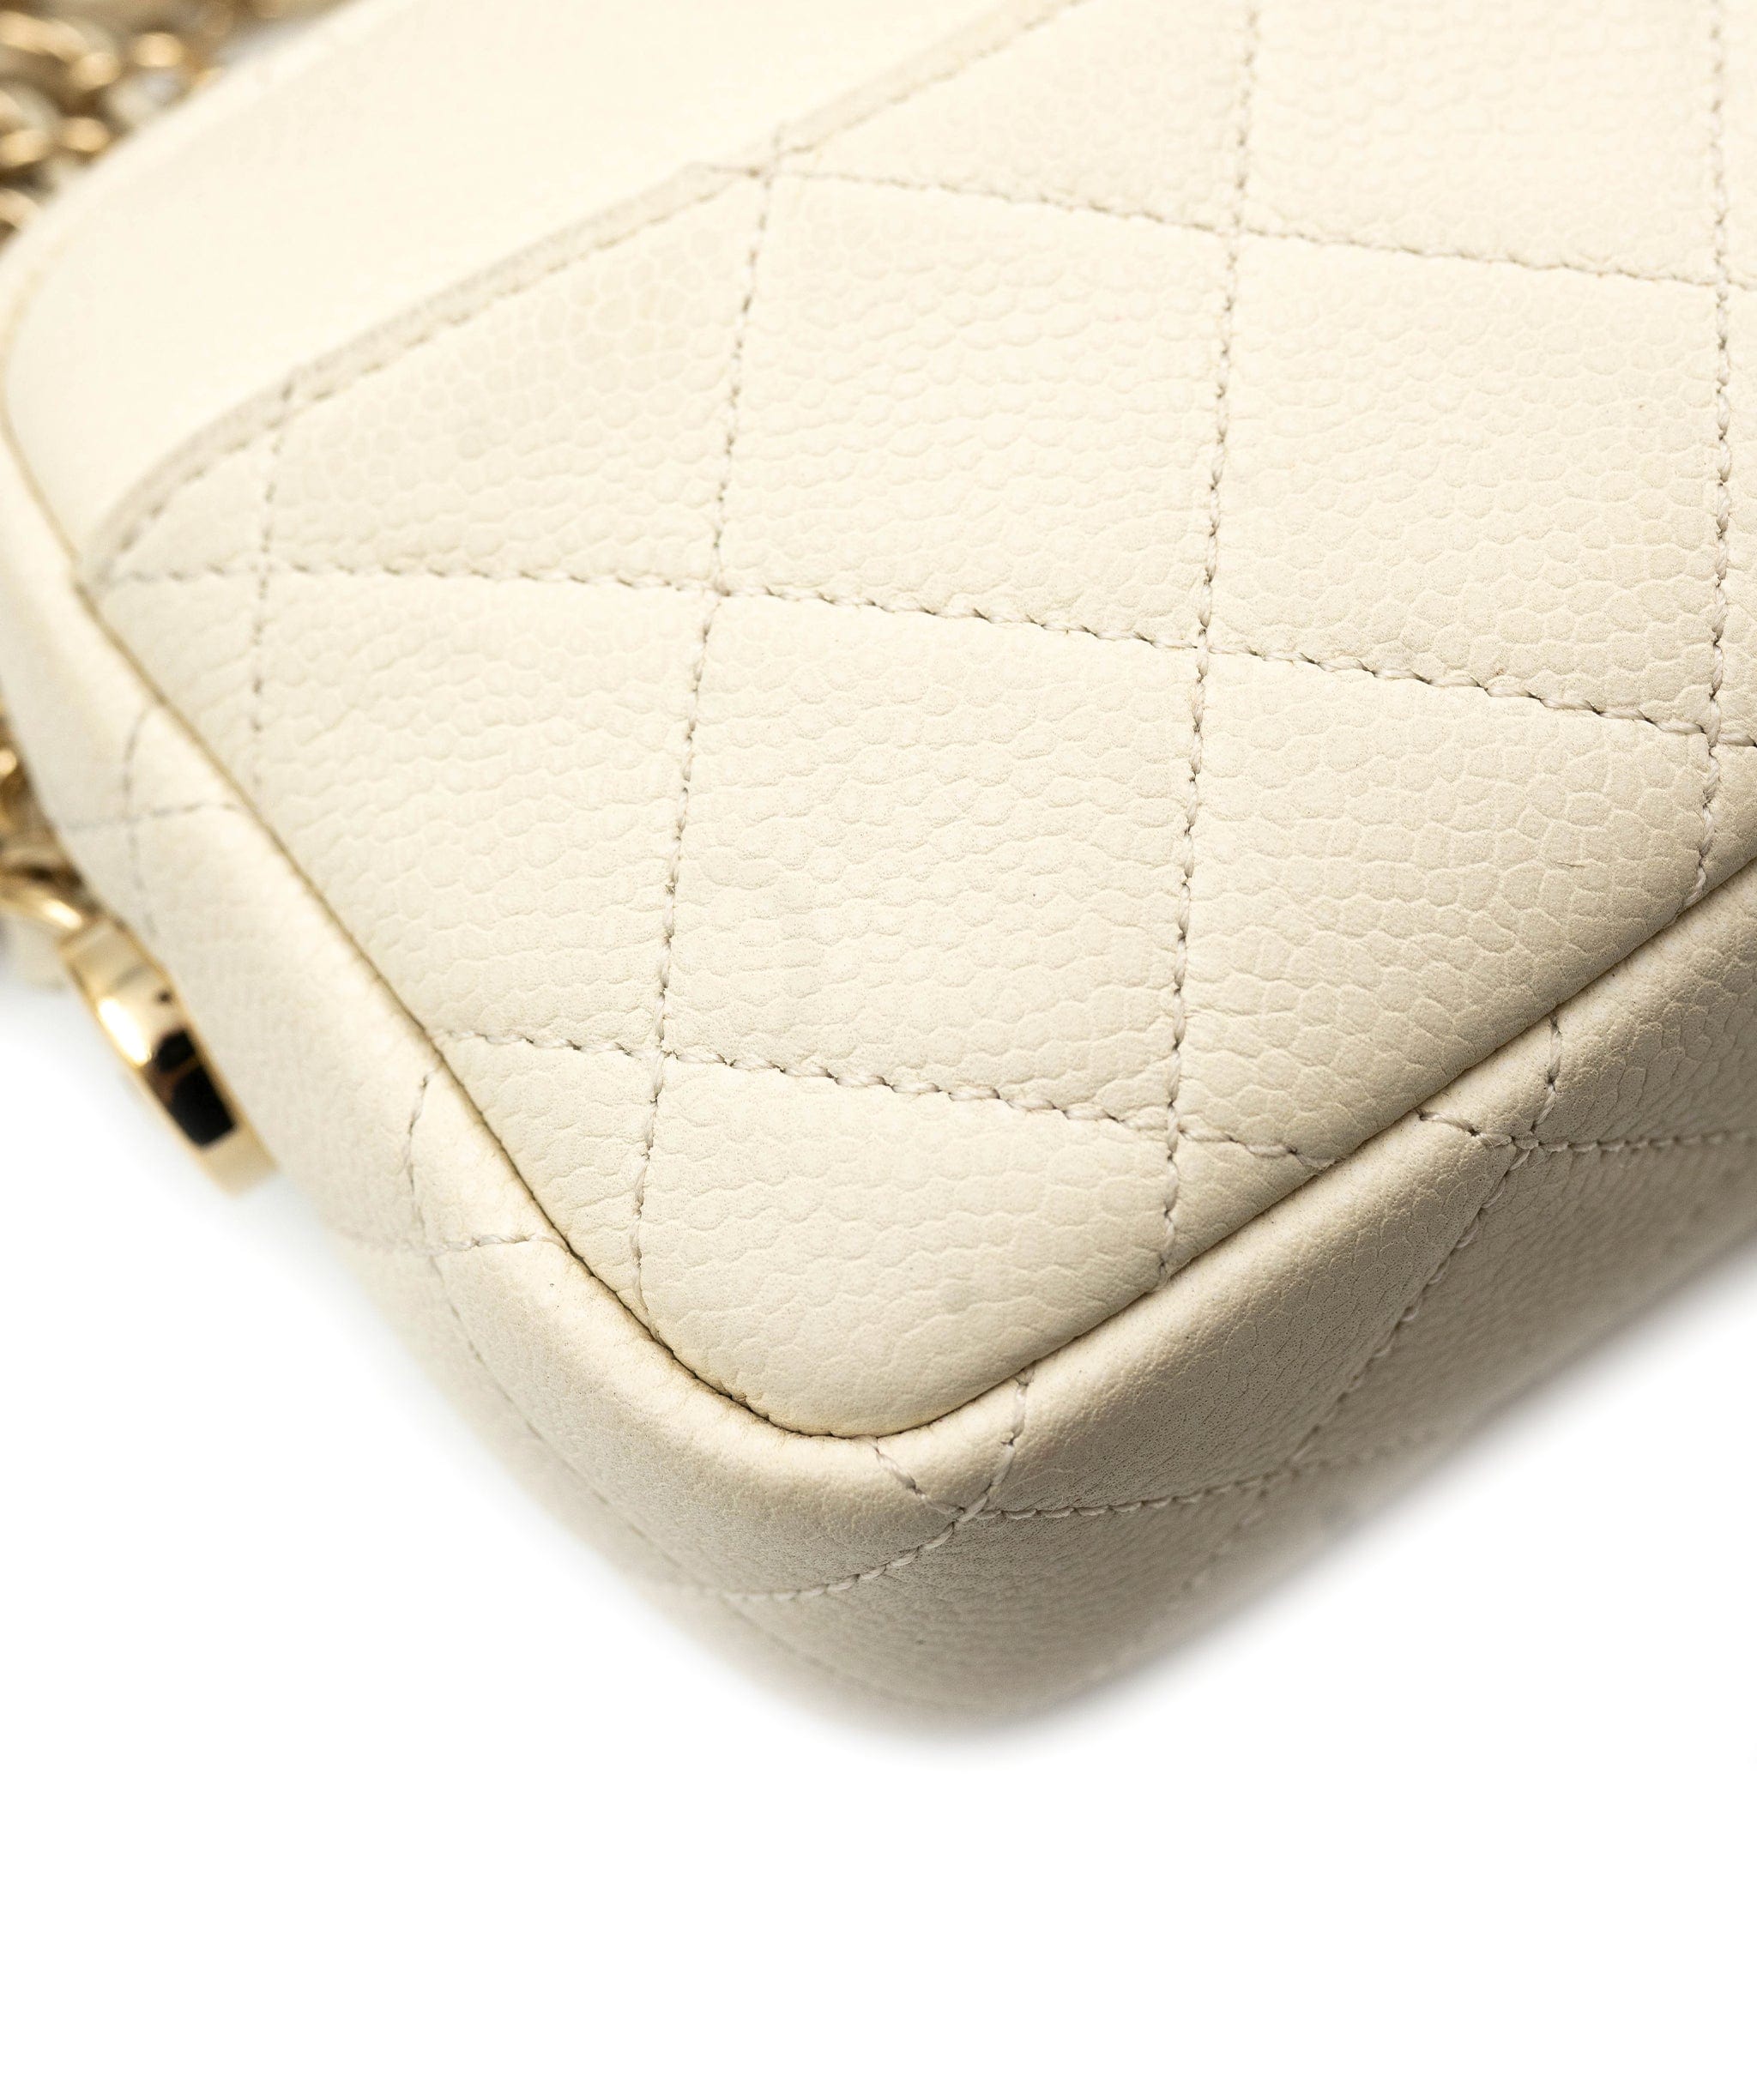 Chanel Chanel Matrasse Mini Camera Bag Fringe Chain Shoulder Bag PXL1736